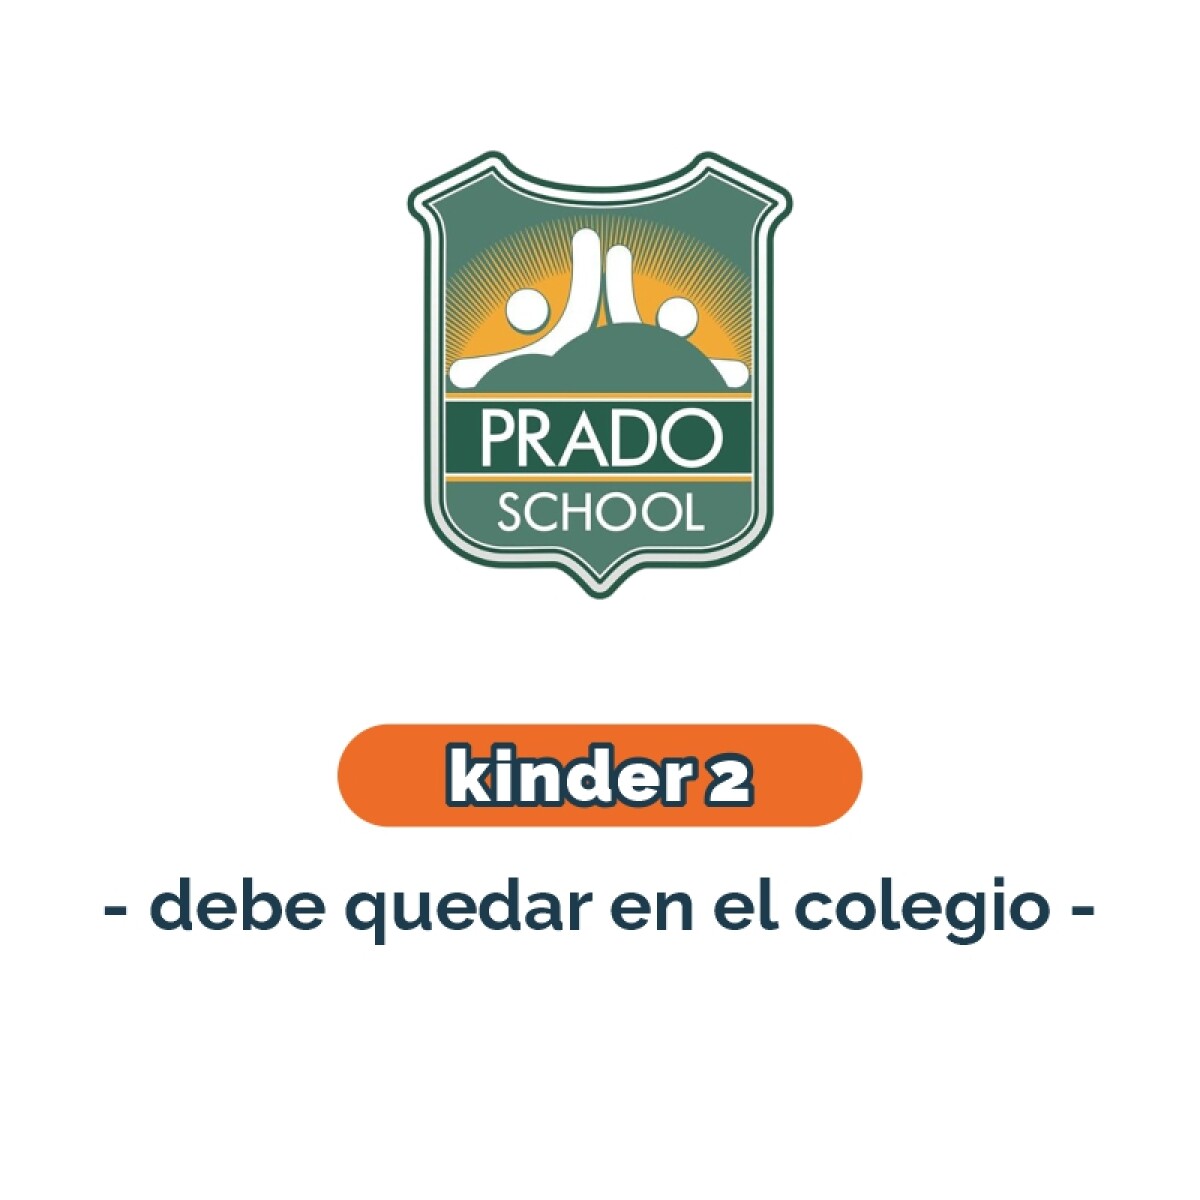 Lista de materiales - Kinder 2 debe quedar en el colegio Prado School 